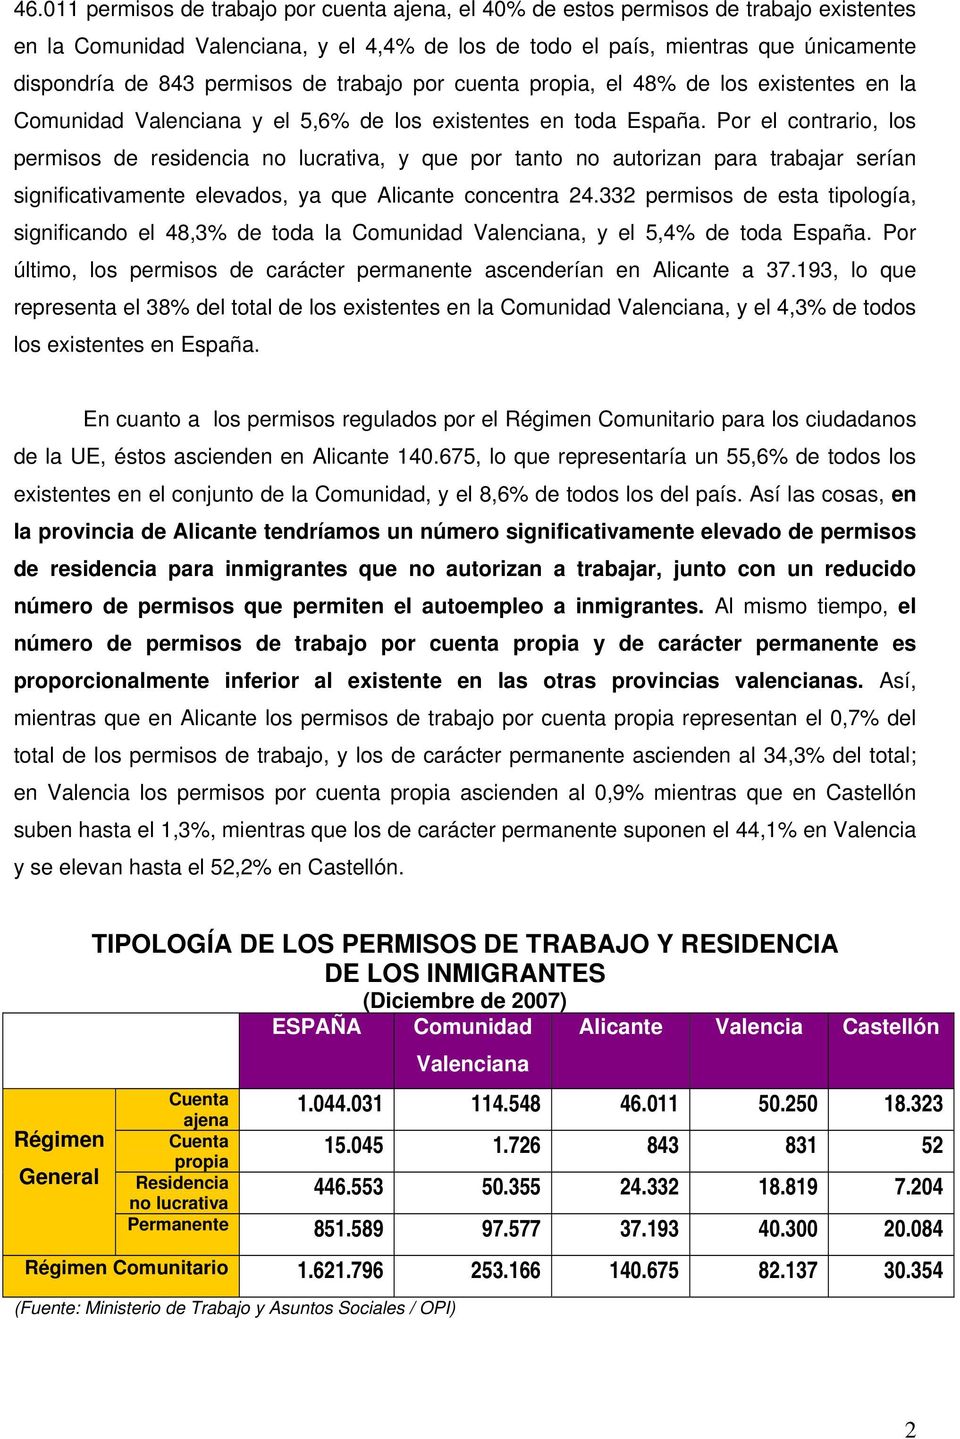 Por el contrario, los permisos de residencia no lucrativa, y que por tanto no autorizan para trabajar serían significativamente elevados, ya que Alicante concentra 24.